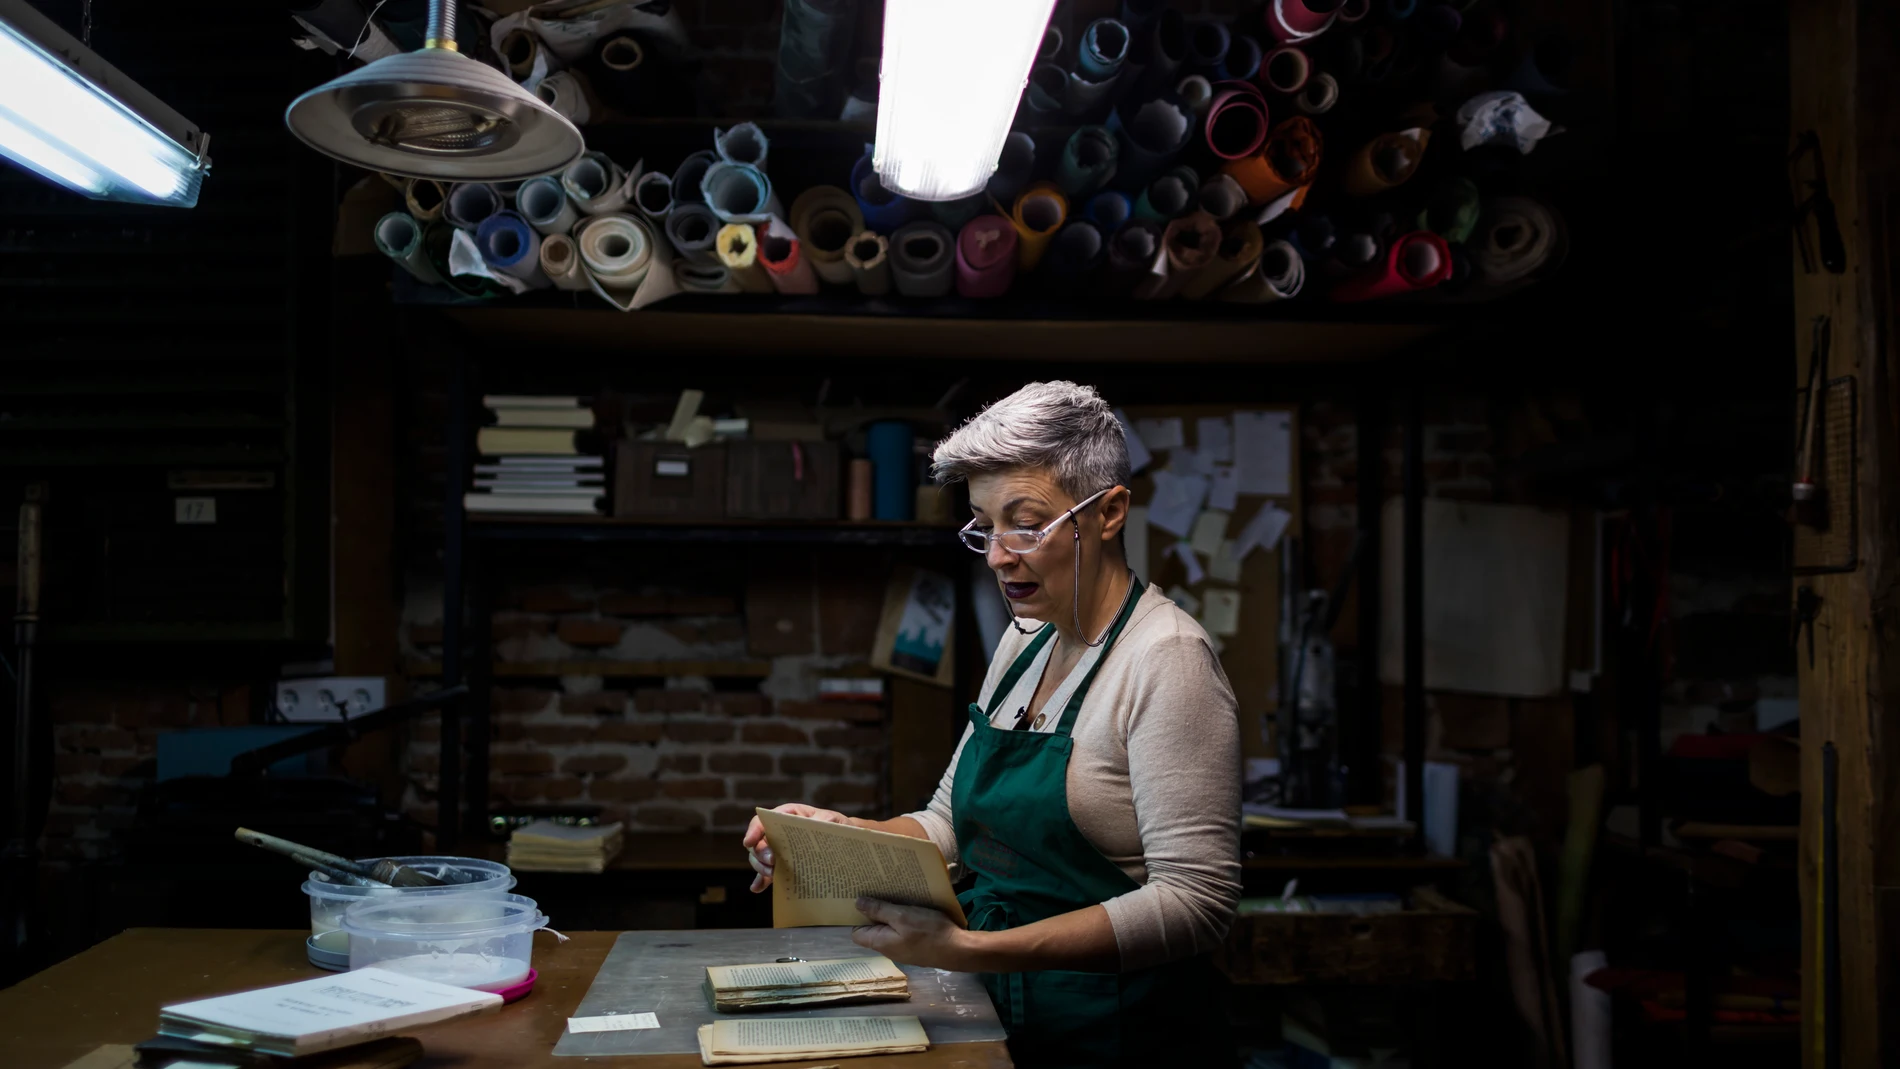 Maite, del Taller de encuadernacion Artesanal Calero, realizando tareas de restauracion de libros.© Alberto R. Roldan / Diario La Razón